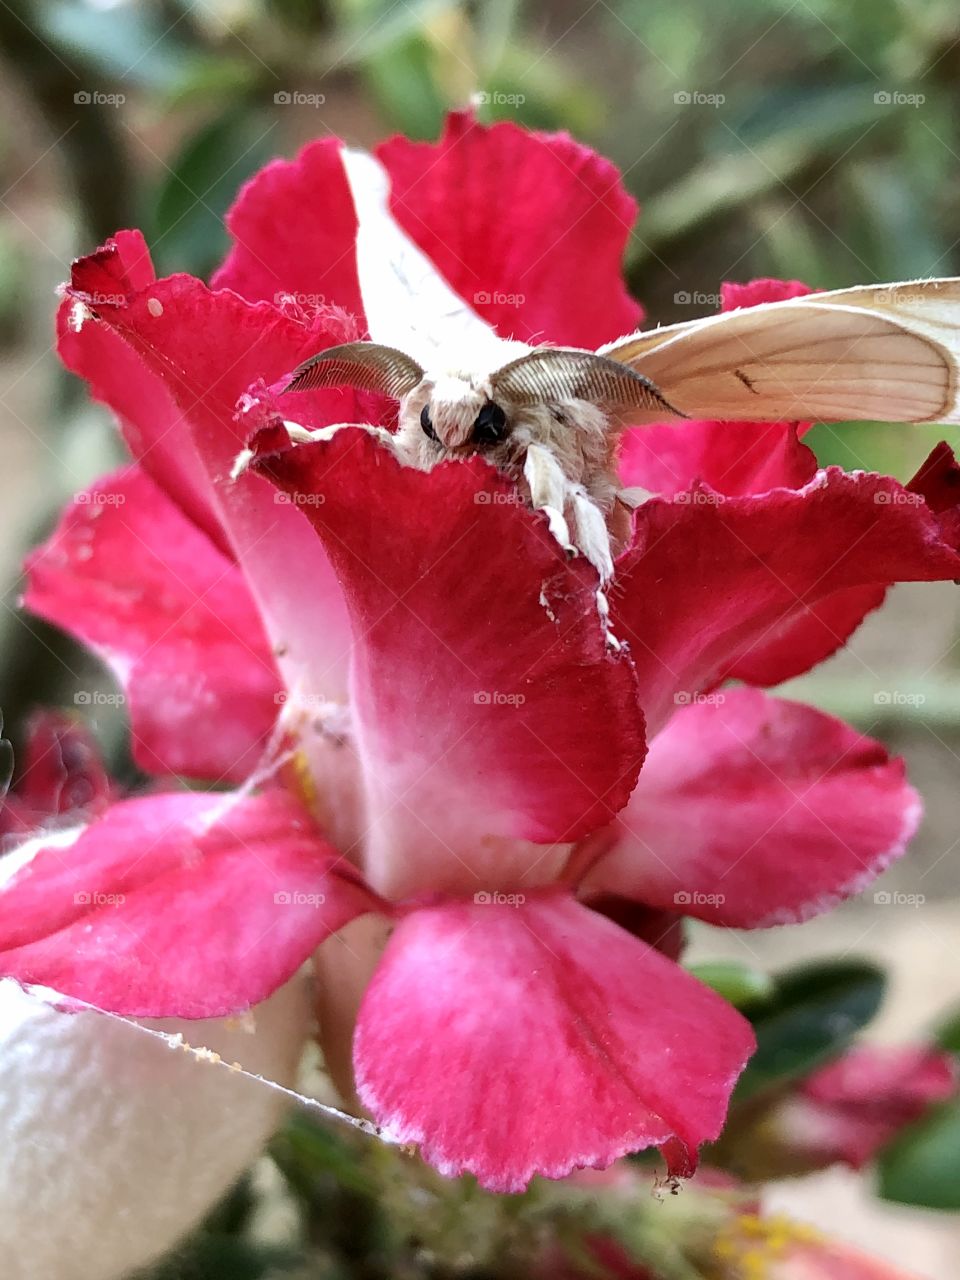 moth on desert flower